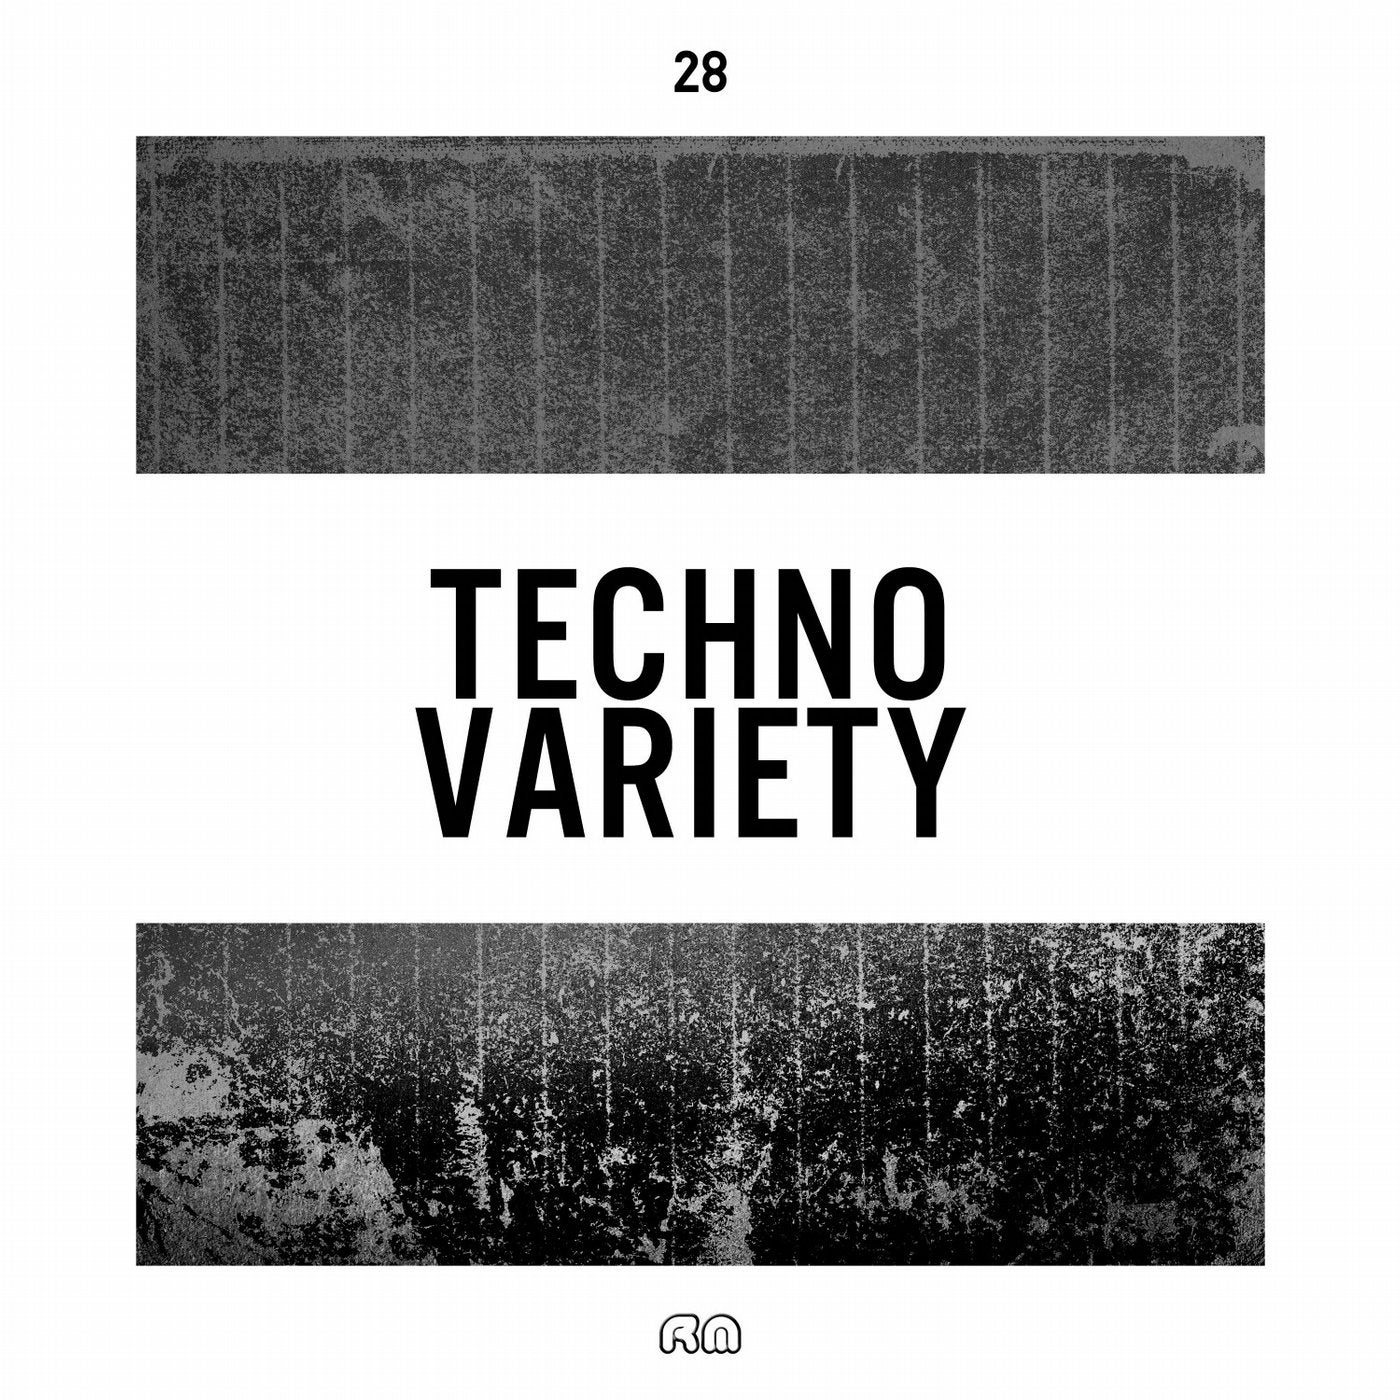 Techno Variety #28